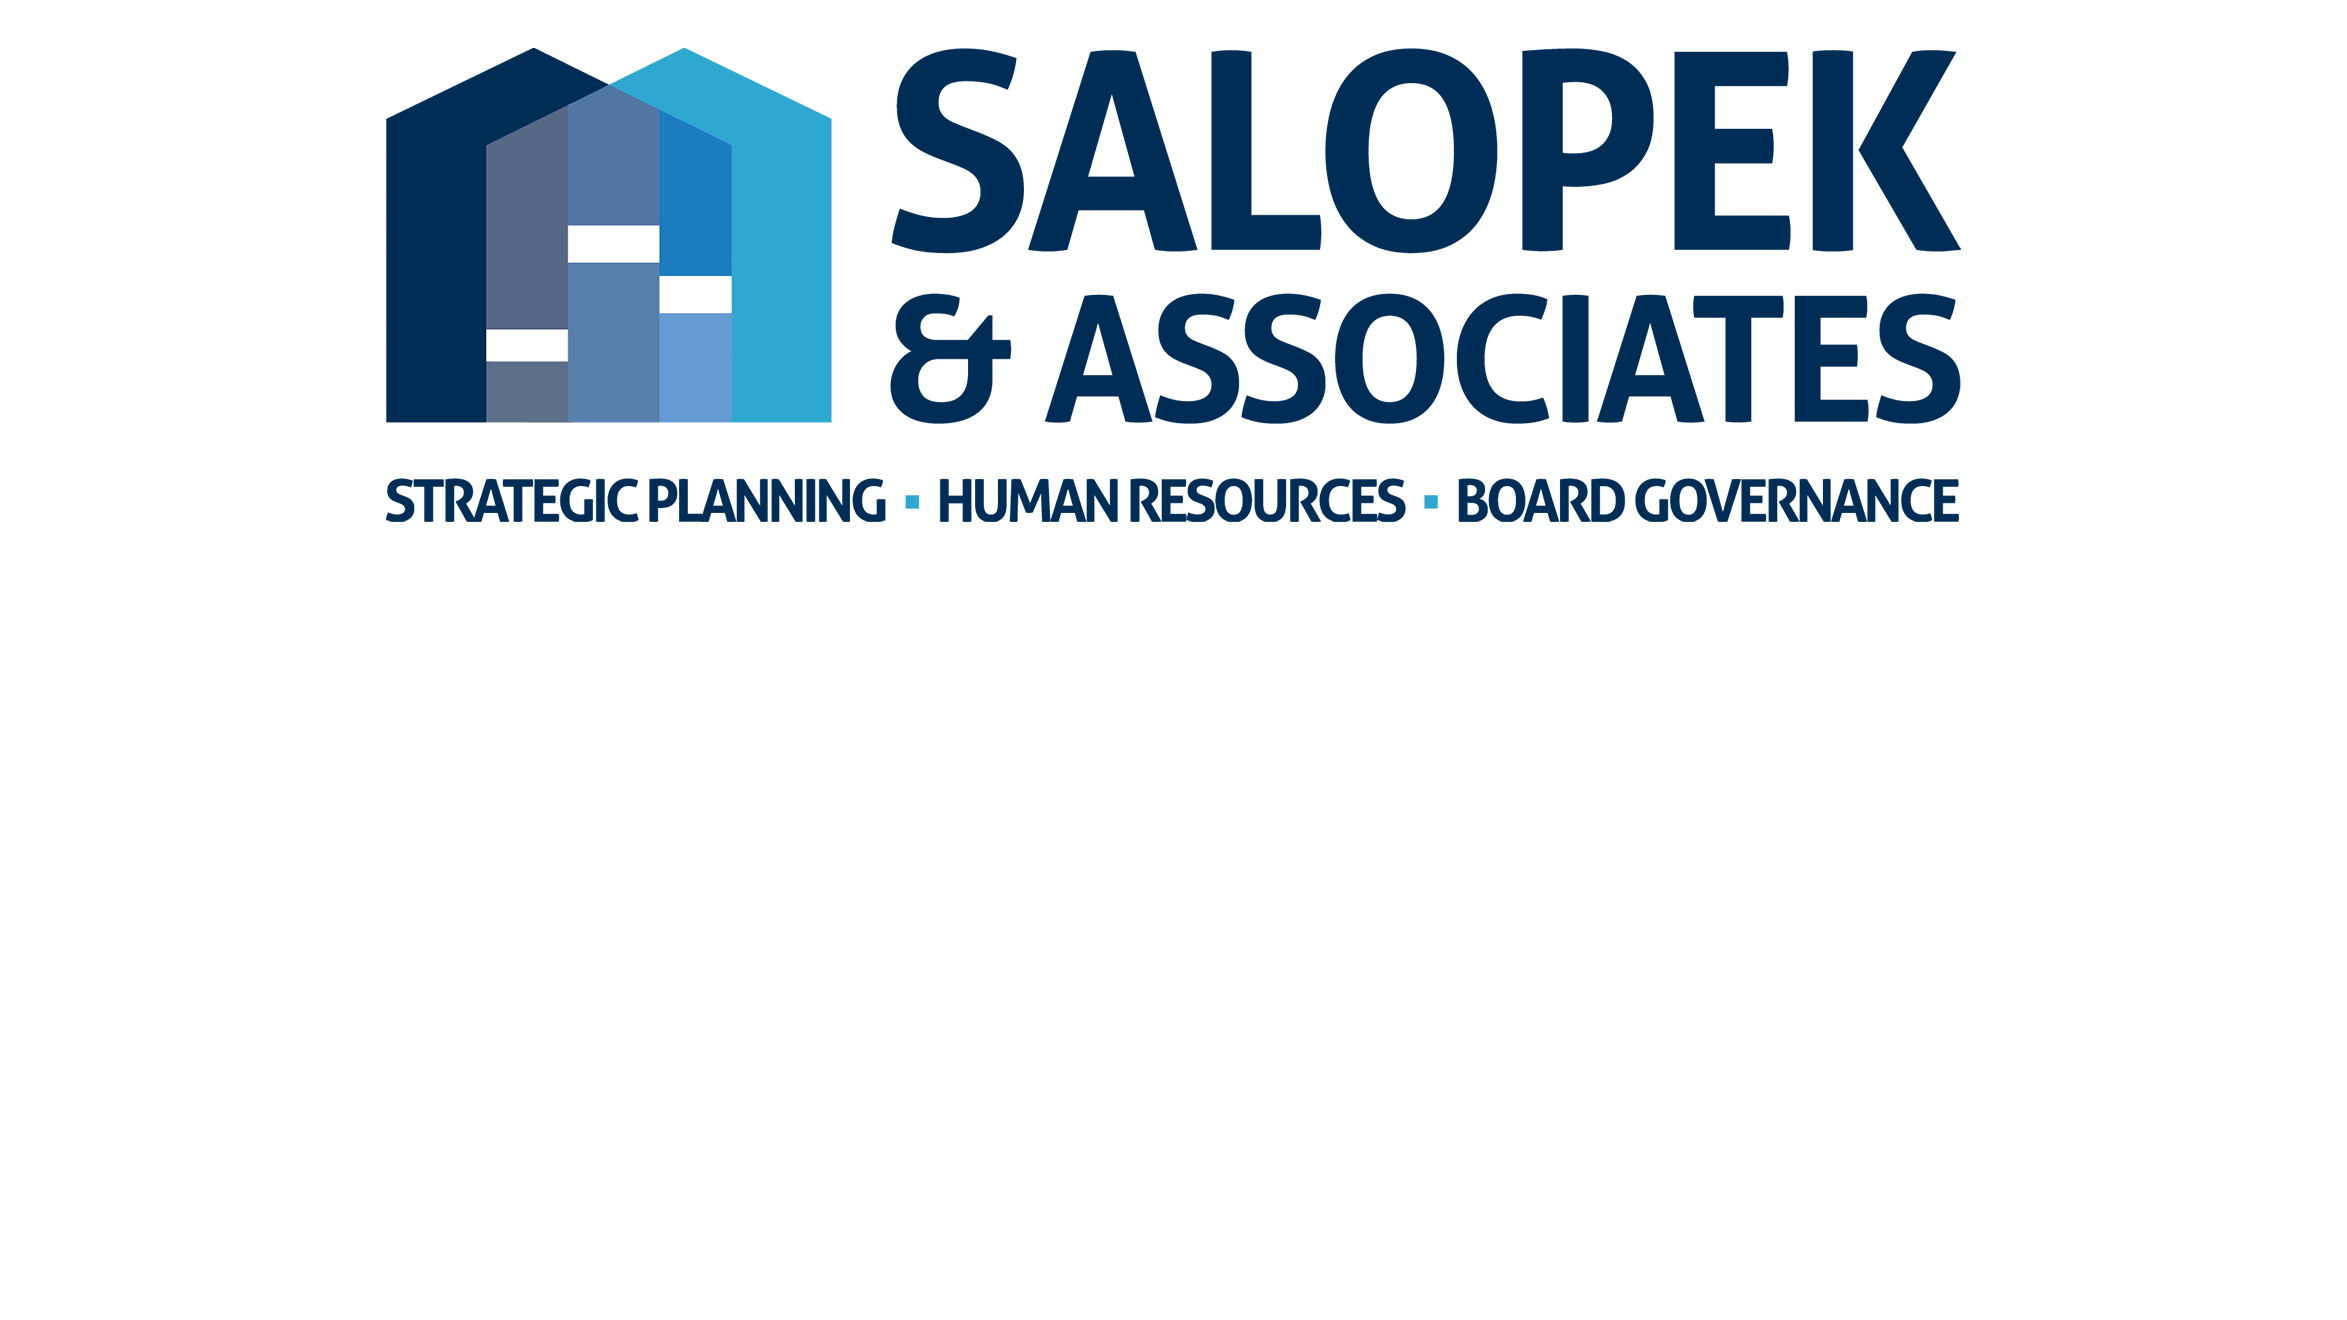 Salopek & Associates logo